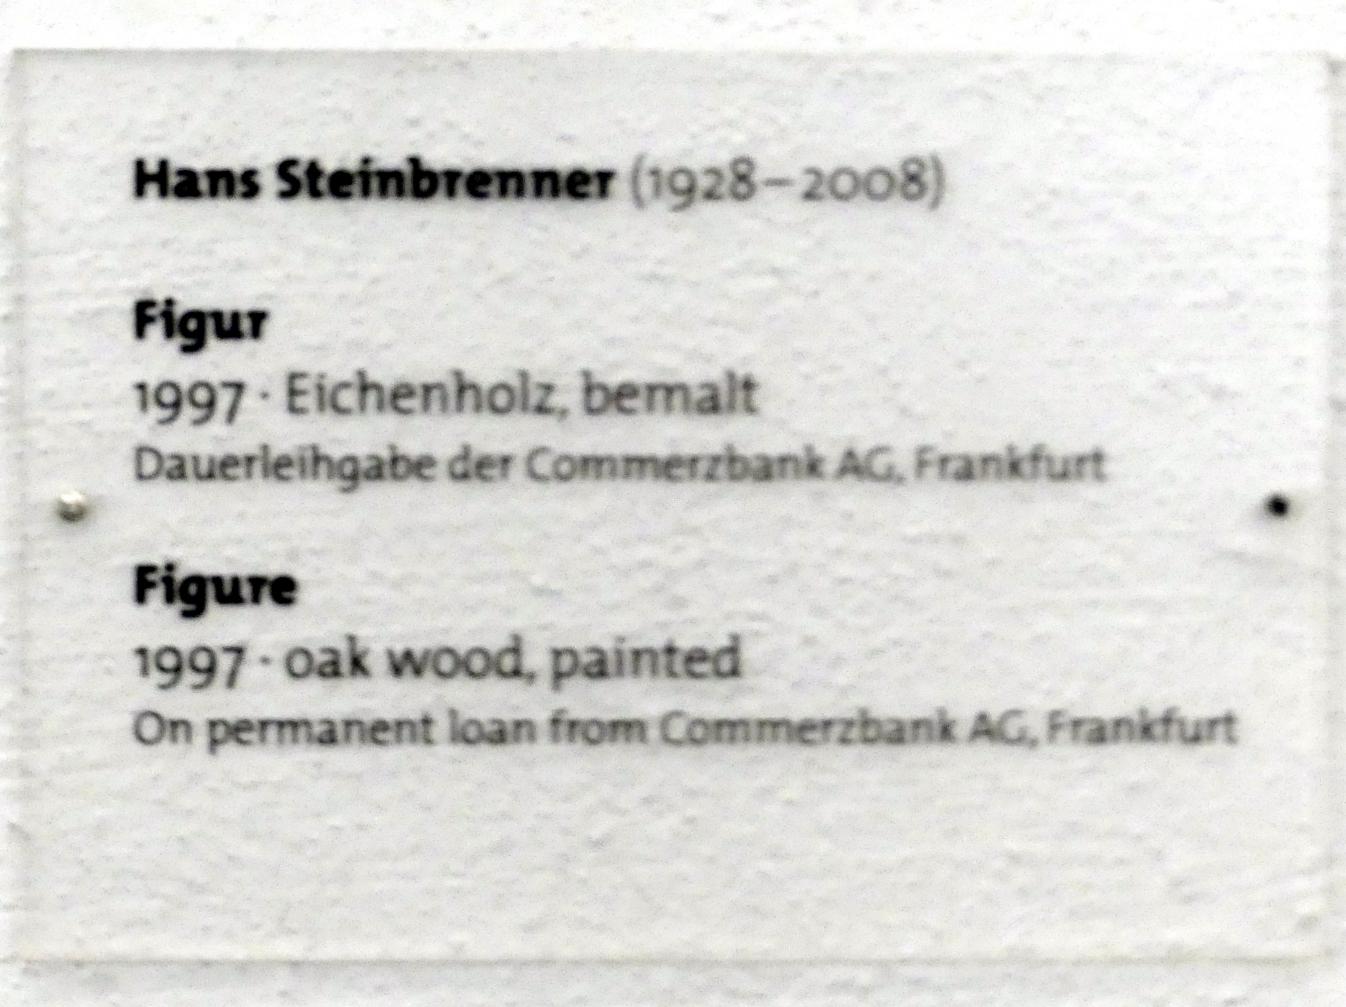 Hans Steinbrenner (1997), Figur, Dresden, Albertinum, Galerie Neue Meister, Erdgeschoss, Skulpturenhalle, 1997, Bild 4/4